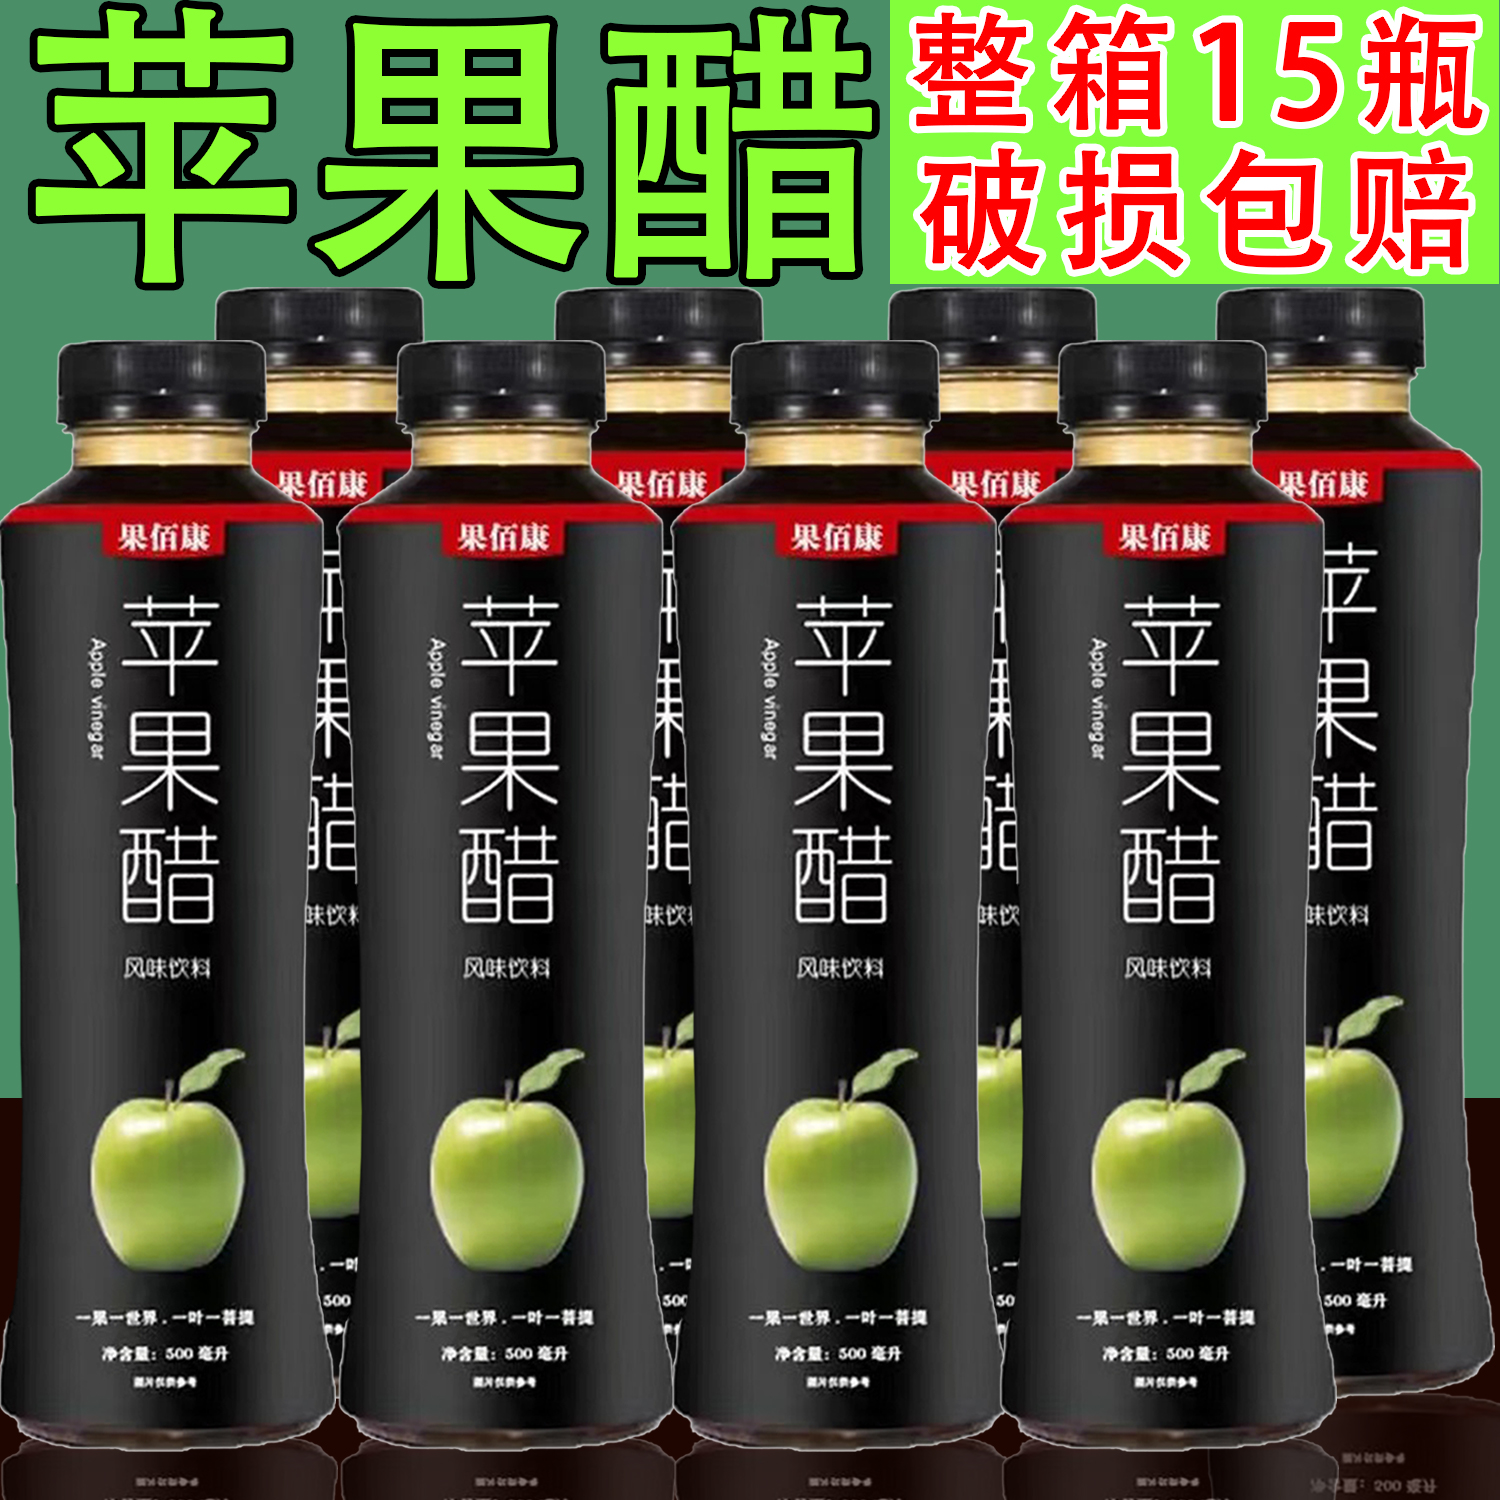 果佰康苹果醋500ml*15瓶整箱包邮饮料苹果汁醋味果味风味饮料